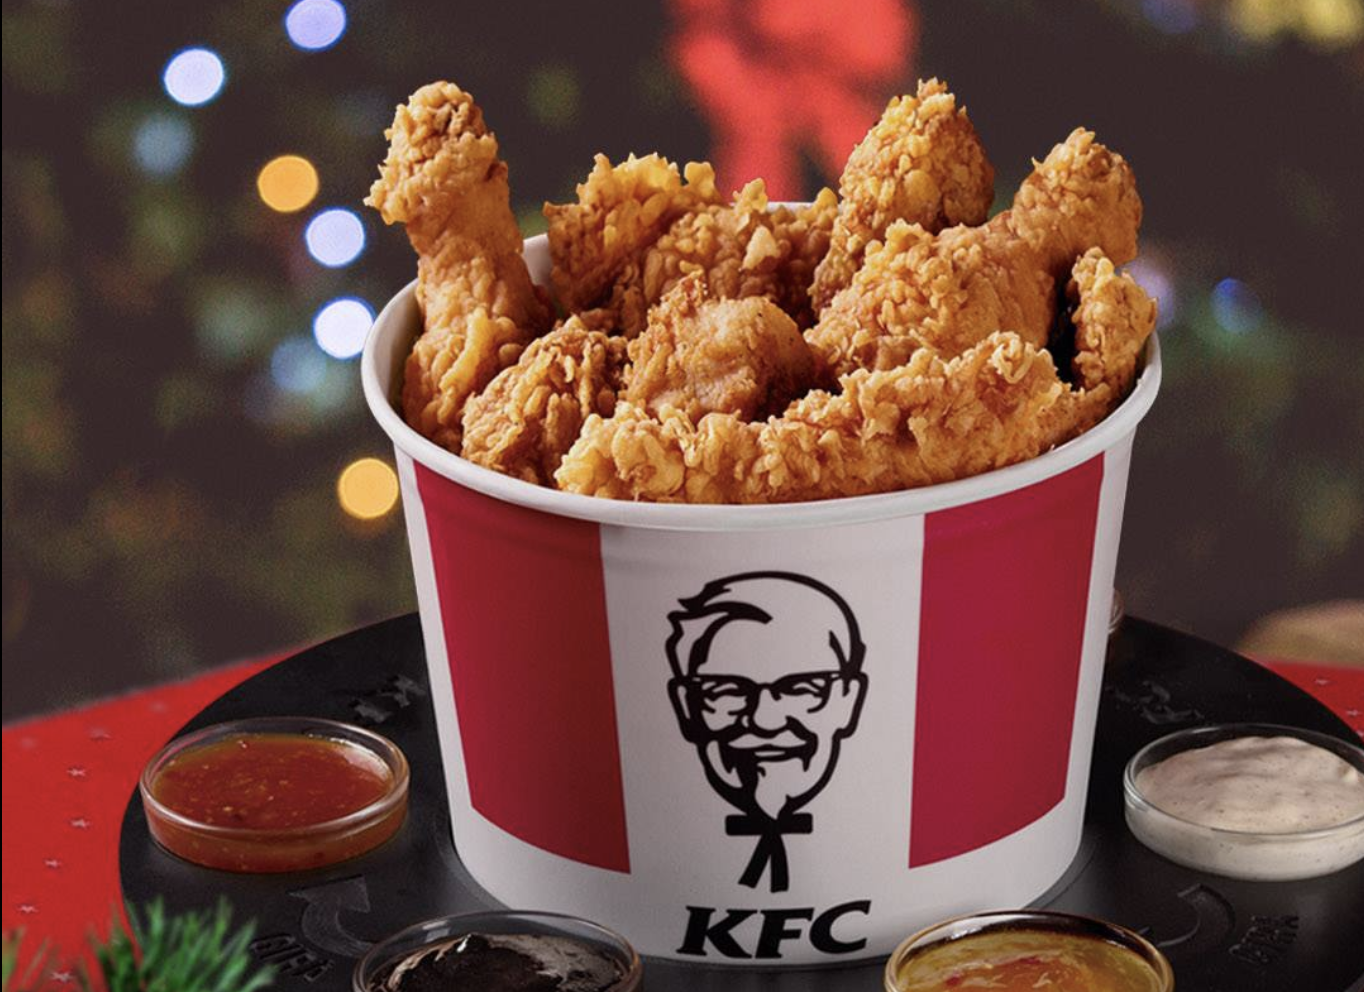 Un cubo de pollo frito de KFC, en una imagen promocional.